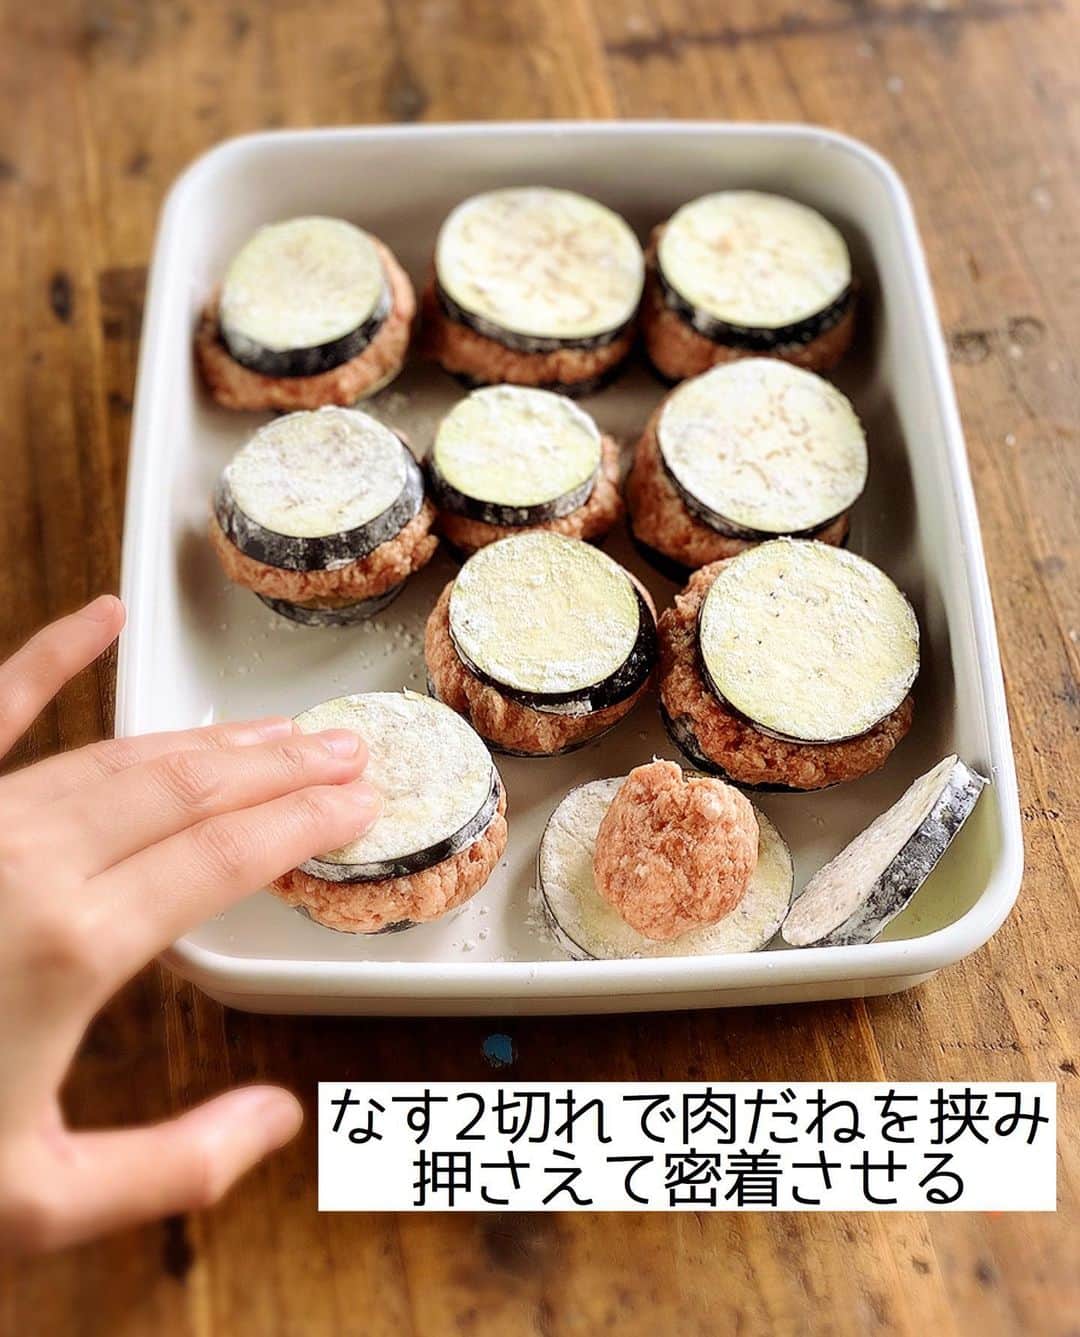 Mizuki【料理ブロガー・簡単レシピ】さんのインスタグラム写真 - (Mizuki【料理ブロガー・簡単レシピ】Instagram)「・﻿ 【レシピ】ーーーーーーーーーーー﻿ ♡とろとろ♡なすのはさみ焼き♡﻿ ーーーーーーーーーーーーーーーー﻿ ﻿ ﻿ ﻿ おはようございます(*^^*)﻿ ﻿ 今日ご紹介させていただくのは﻿ とろとろなすのはさみ焼き♡﻿ シンプルなつくねをサンドして﻿ 甘辛い照り焼きだれで仕上げました♩﻿ ﻿ 食べ応えがあって見た目も華やか♡﻿ とろっとジューシーな食感で﻿ たまらない美味しさですよ〜(*´艸`)﻿ ﻿ フライパンひとつでできるので﻿ よかったらお試し下さいね(*^^*)﻿ ﻿ ﻿ ﻿ ーーーーーーーーーーーーーーーーーーーー﻿ 【2人分】﻿ なす...2本﻿ 片栗粉...大1.5﻿ 豚ひき肉...150g﻿ ●醤油・酒・片栗粉...各小2﻿ ●生姜チューブ...3cm﻿ サラダ油...大1.5﻿ ☆醤油・みりん...各大2﻿ ☆砂糖...小1﻿ 万能ねぎ・ごま...各適量﻿ ﻿ 1.なすは5mm幅の輪切りにし、水に3分晒して(しっかり)水気を切る。ポリ袋に入れ、片栗粉を加えて振ってまぶす。ボウルにひき肉と●を入れてよく混ぜる。☆は合わせておく。﻿ 2.なす2切れで肉だねを挟み、密着させて形を整える。﻿ 3.フライパンにサラダ油を中火で熱して2を焼く。焼き色がついたら裏返してフタをし、弱火で4分蒸し焼きにする。﻿ 4.余分な油を拭き取り、☆を加えて煮からめる。器に盛り、ねぎとごまをトッピングする。﻿ ーーーーーーーーーーーーーーーーーーーー﻿ ﻿ ﻿ ﻿ 《ポイント》﻿ ♦︎なすの水気はしっかり切って下さい♩ ペーパータオルで押さえると◎﻿ ♦︎なすと肉だねが密着するようギュッと抑えてから形を整えて下さい♩﻿ ♦︎焼いている時は極力いじらず、裏返す時はヘラをご使用下さい♩﻿ ♦︎鶏ひき肉や合びき肉で作っても♩﻿ ﻿ ﻿ ﻿ ﻿ ﻿ ﻿ ﻿ ＿＿＿＿＿＿＿＿＿＿＿＿＿＿＿＿＿﻿ 🎀6刷重版しました🎀﻿ 混ぜて焼くだけ。はじめてでも失敗しない！﻿ 【#ホットケーキミックスのお菓子 】﻿ ﻿ 一冊まるっとホケミスイーツ♩﻿ 普段のおやつから﻿ 特別な日にも使えるレシピを﻿ この一冊に詰め込みました(*^^*)﻿ ホットケーキミックスを使えば﻿ 簡単に本格的なお菓子が作れますよ♡﻿ ＿＿＿＿＿＿＿＿＿＿＿＿＿＿＿＿＿﻿ ﻿ ﻿ ﻿ ＿＿＿＿＿＿＿＿＿＿＿＿＿＿＿＿＿＿＿﻿ 📕6刷重版しました📕﻿ 簡単・時短！ 毎日のごはんがラクになる﻿ ✨🦋 【 #Mizukiの今どき和食 】🦋✨﻿ ＿＿＿＿＿＿＿＿＿＿＿＿＿＿＿＿＿＿＿﻿ なるべく少ない材料で﻿ 手間も時間も省きながら﻿ 簡単にできるおいしい和食レシピ♩﻿ 簡単に失敗なくマスターできる一冊で﻿ もっと気軽に、カジュアルに﻿ 和食を楽しんで下さいね(*^^*)﻿ ＿＿＿＿＿＿＿＿＿＿＿＿＿＿＿＿＿＿＿﻿ ﻿ ⭐️ストーリー、ハイライト、プロフ画面に﻿ 本のURLを貼らせていただいております♩﻿ →(@mizuki_31cafe )﻿ ﻿ ﻿ ﻿ ﻿ ﻿ #なす#ひき肉#照り焼き#お弁当#おかず#Mizuki#簡単レシピ#時短レシピ#節約レシピ#料理#レシピ#フーディーテーブル#マカロニメイト#おうちごはん#デリスタグラマー#料理好きな人と繋がりたい#おうちごはんlover#写真好きな人と繋がりたい#foodpic#cooking#recipe#lin_stagrammer#foodporn#yummy#なすのはさみ焼きm」7月25日 7時02分 - mizuki_31cafe